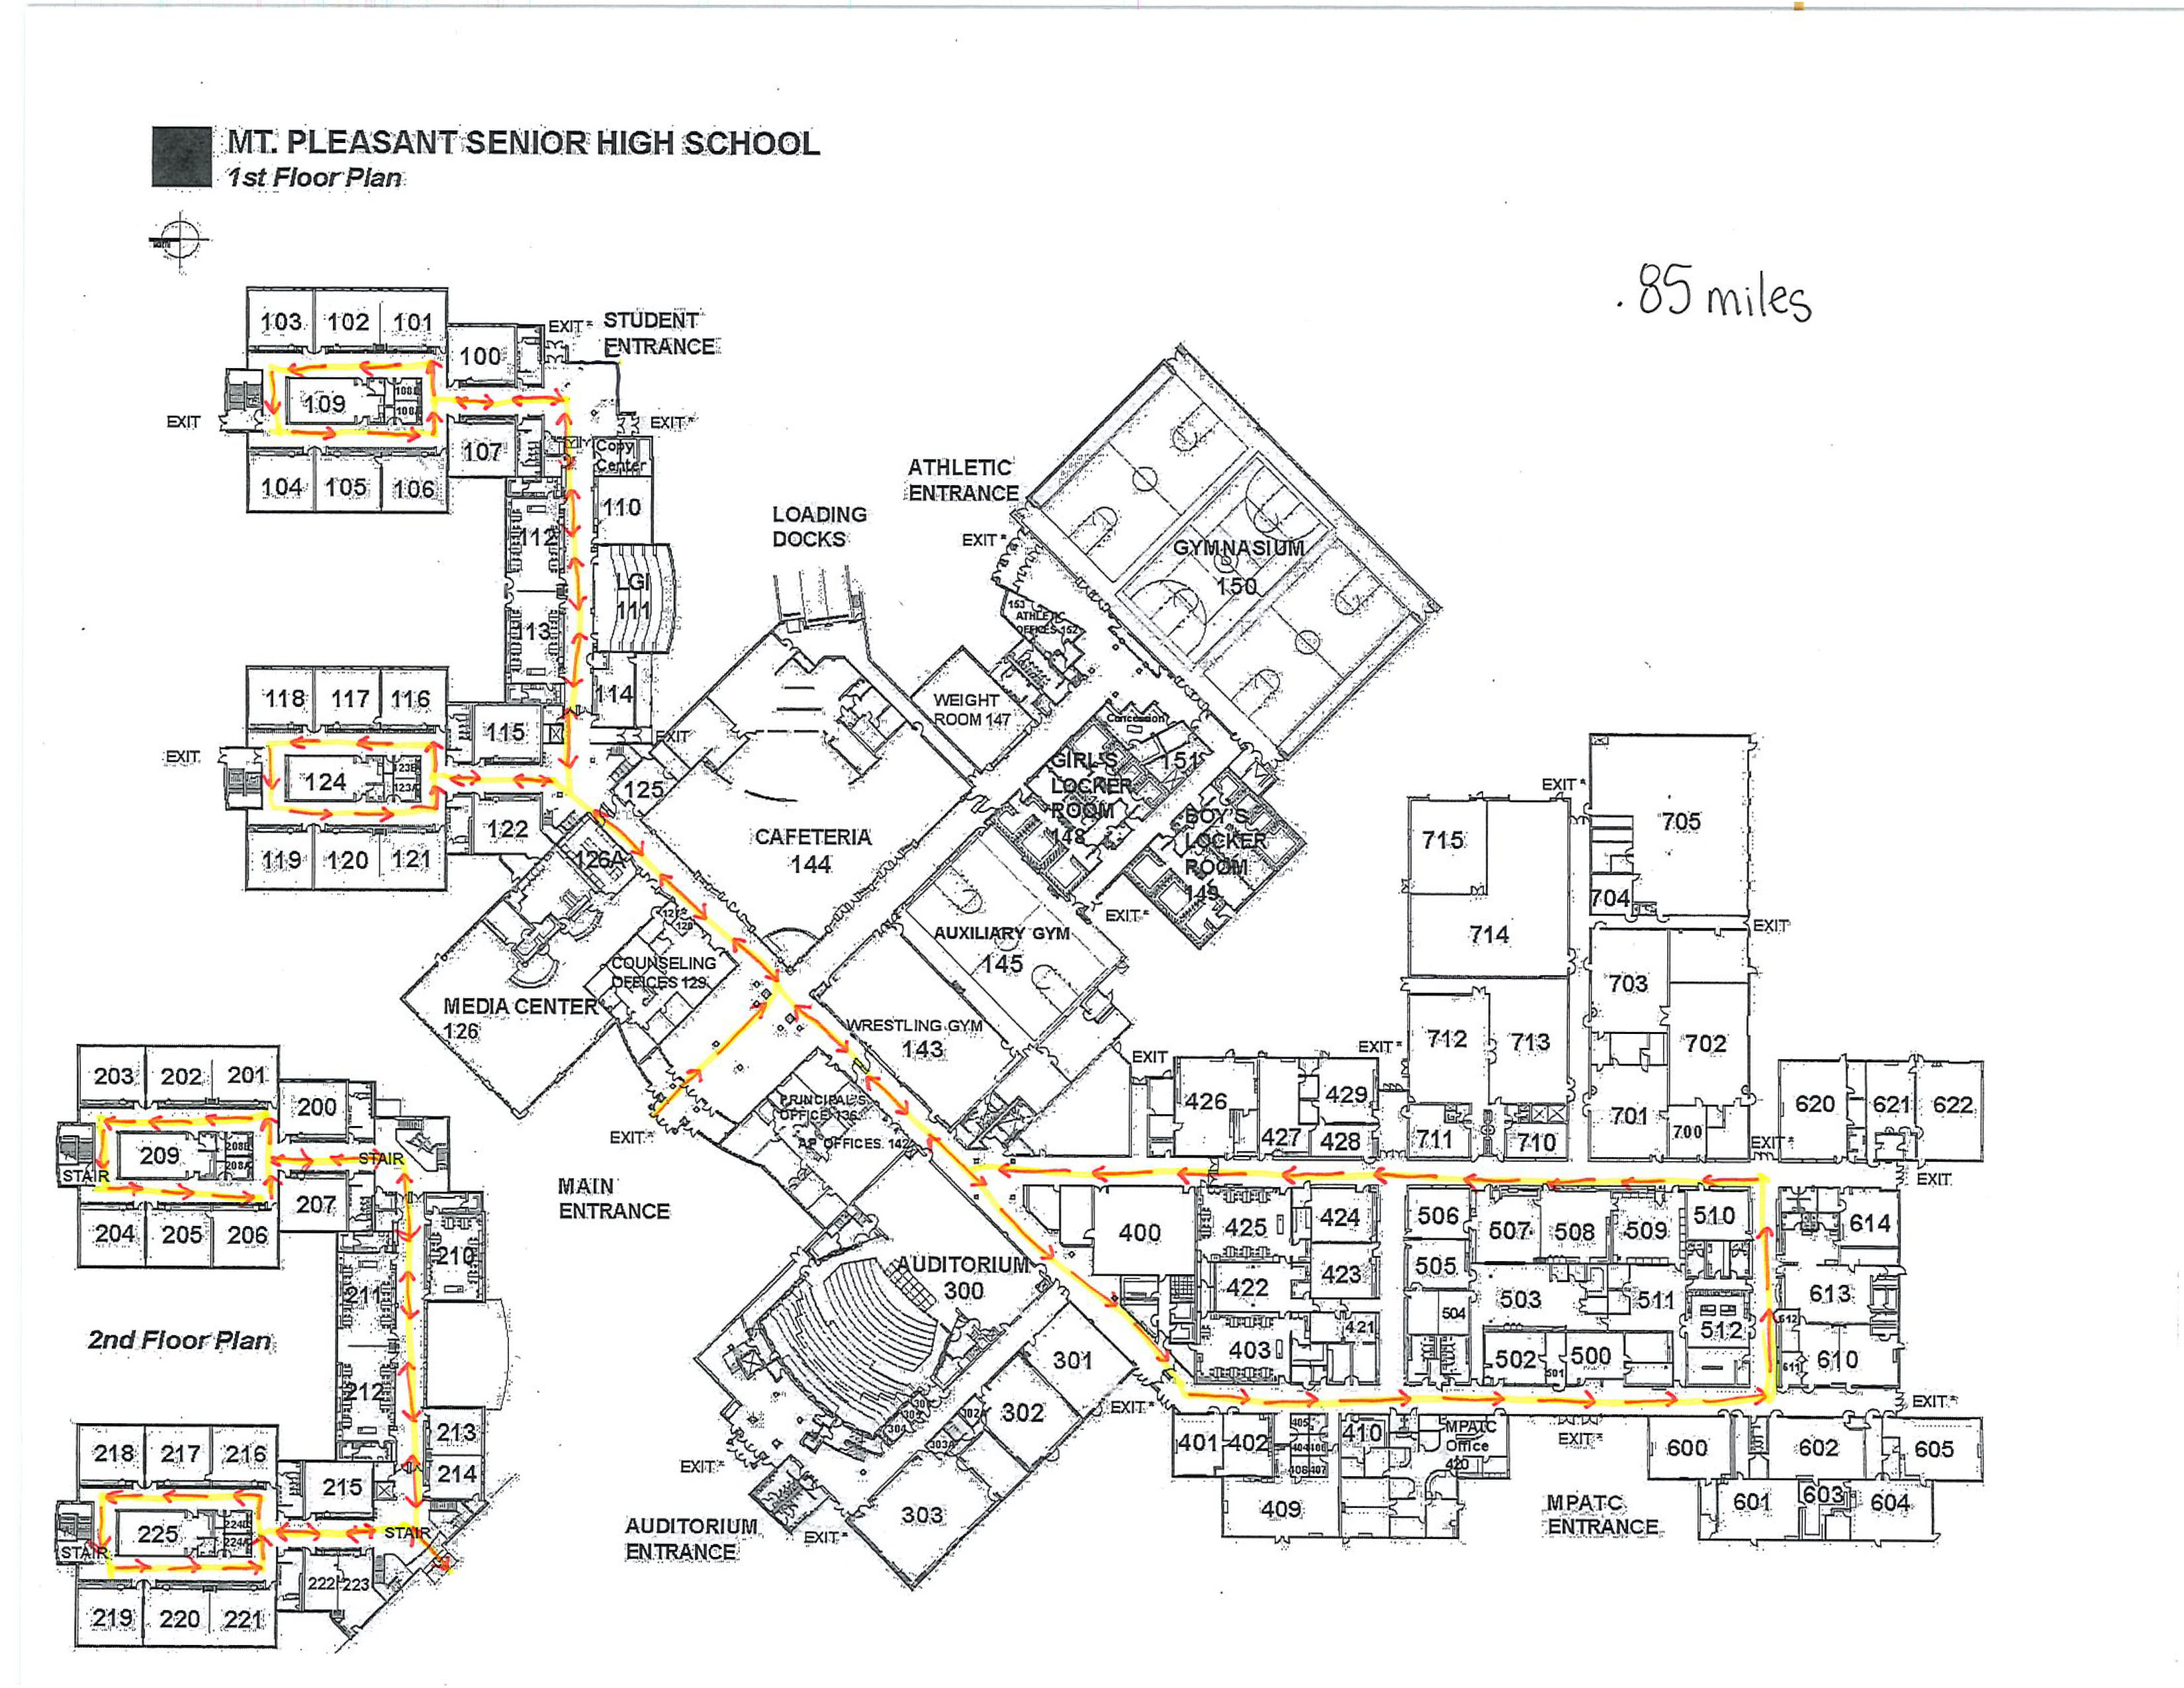 High School Indoor Walk Map